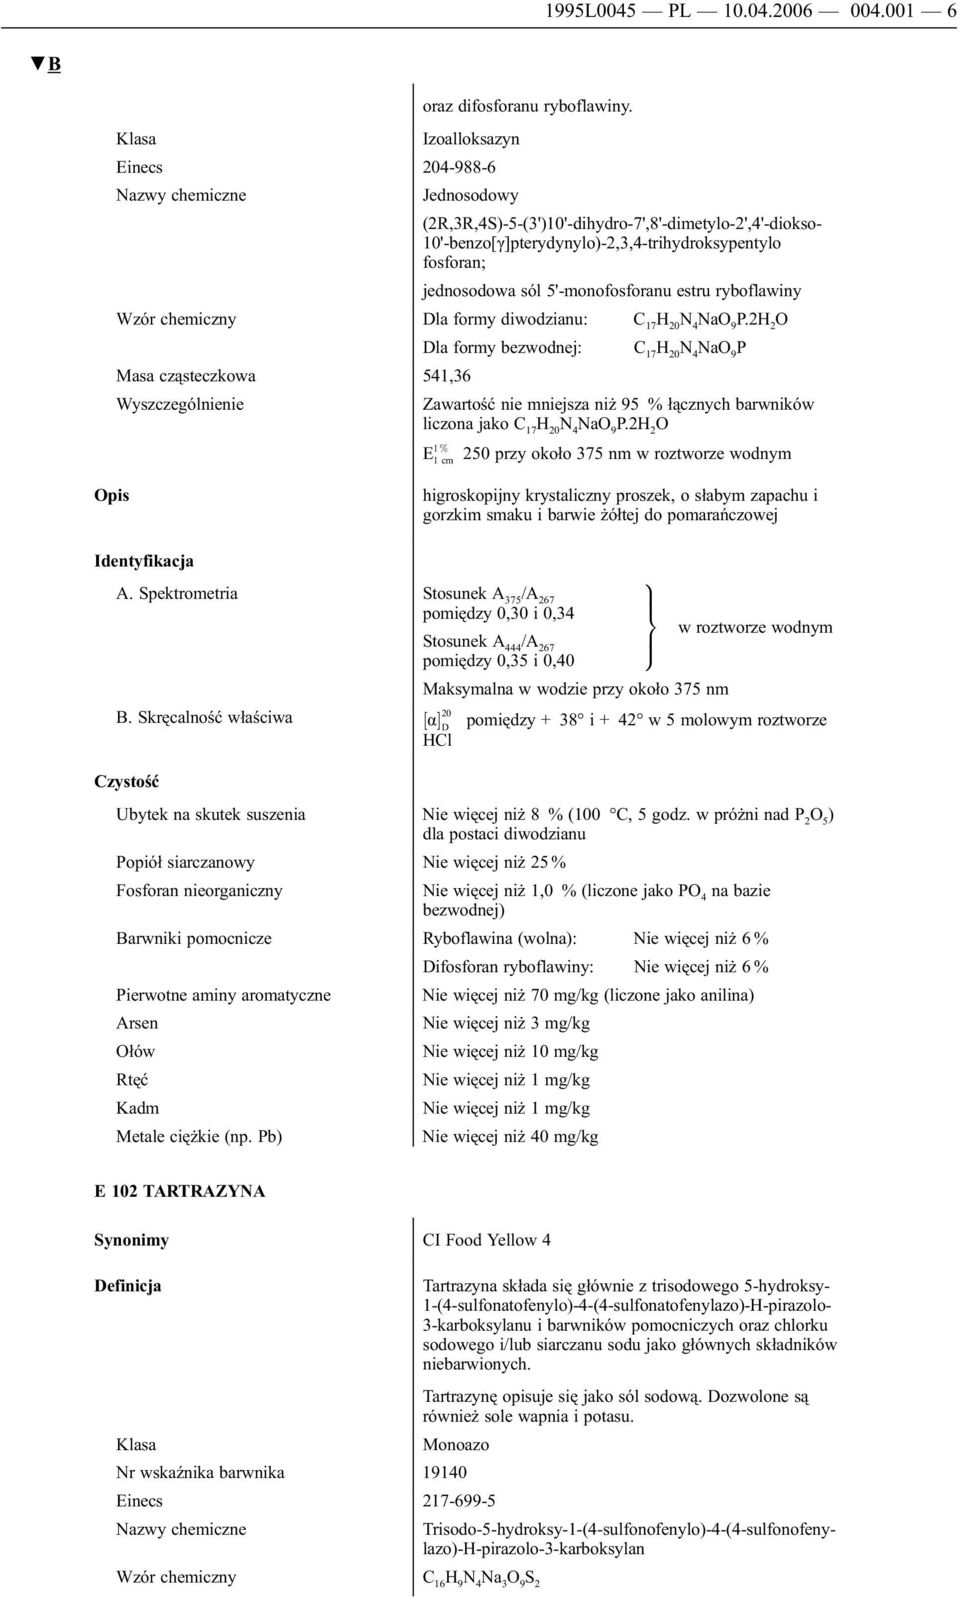 ryboflawiny Wzór chemiczny Dla formy diwodzianu: C 17 H 20 N 4 NaO P.